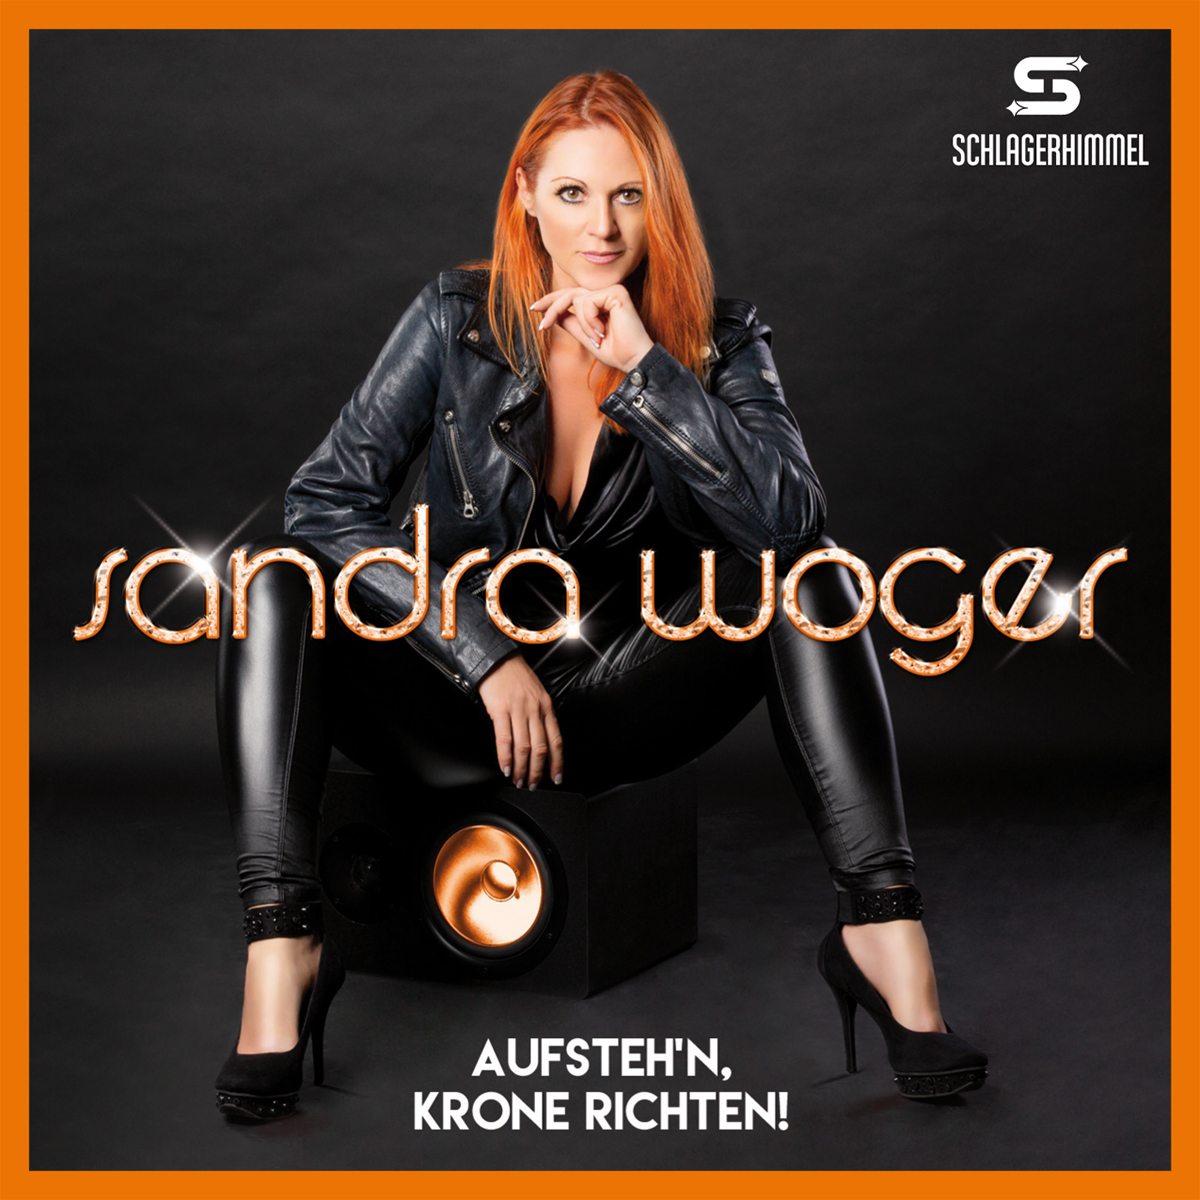 Schlagerhit der Musikerin Sandra Woger